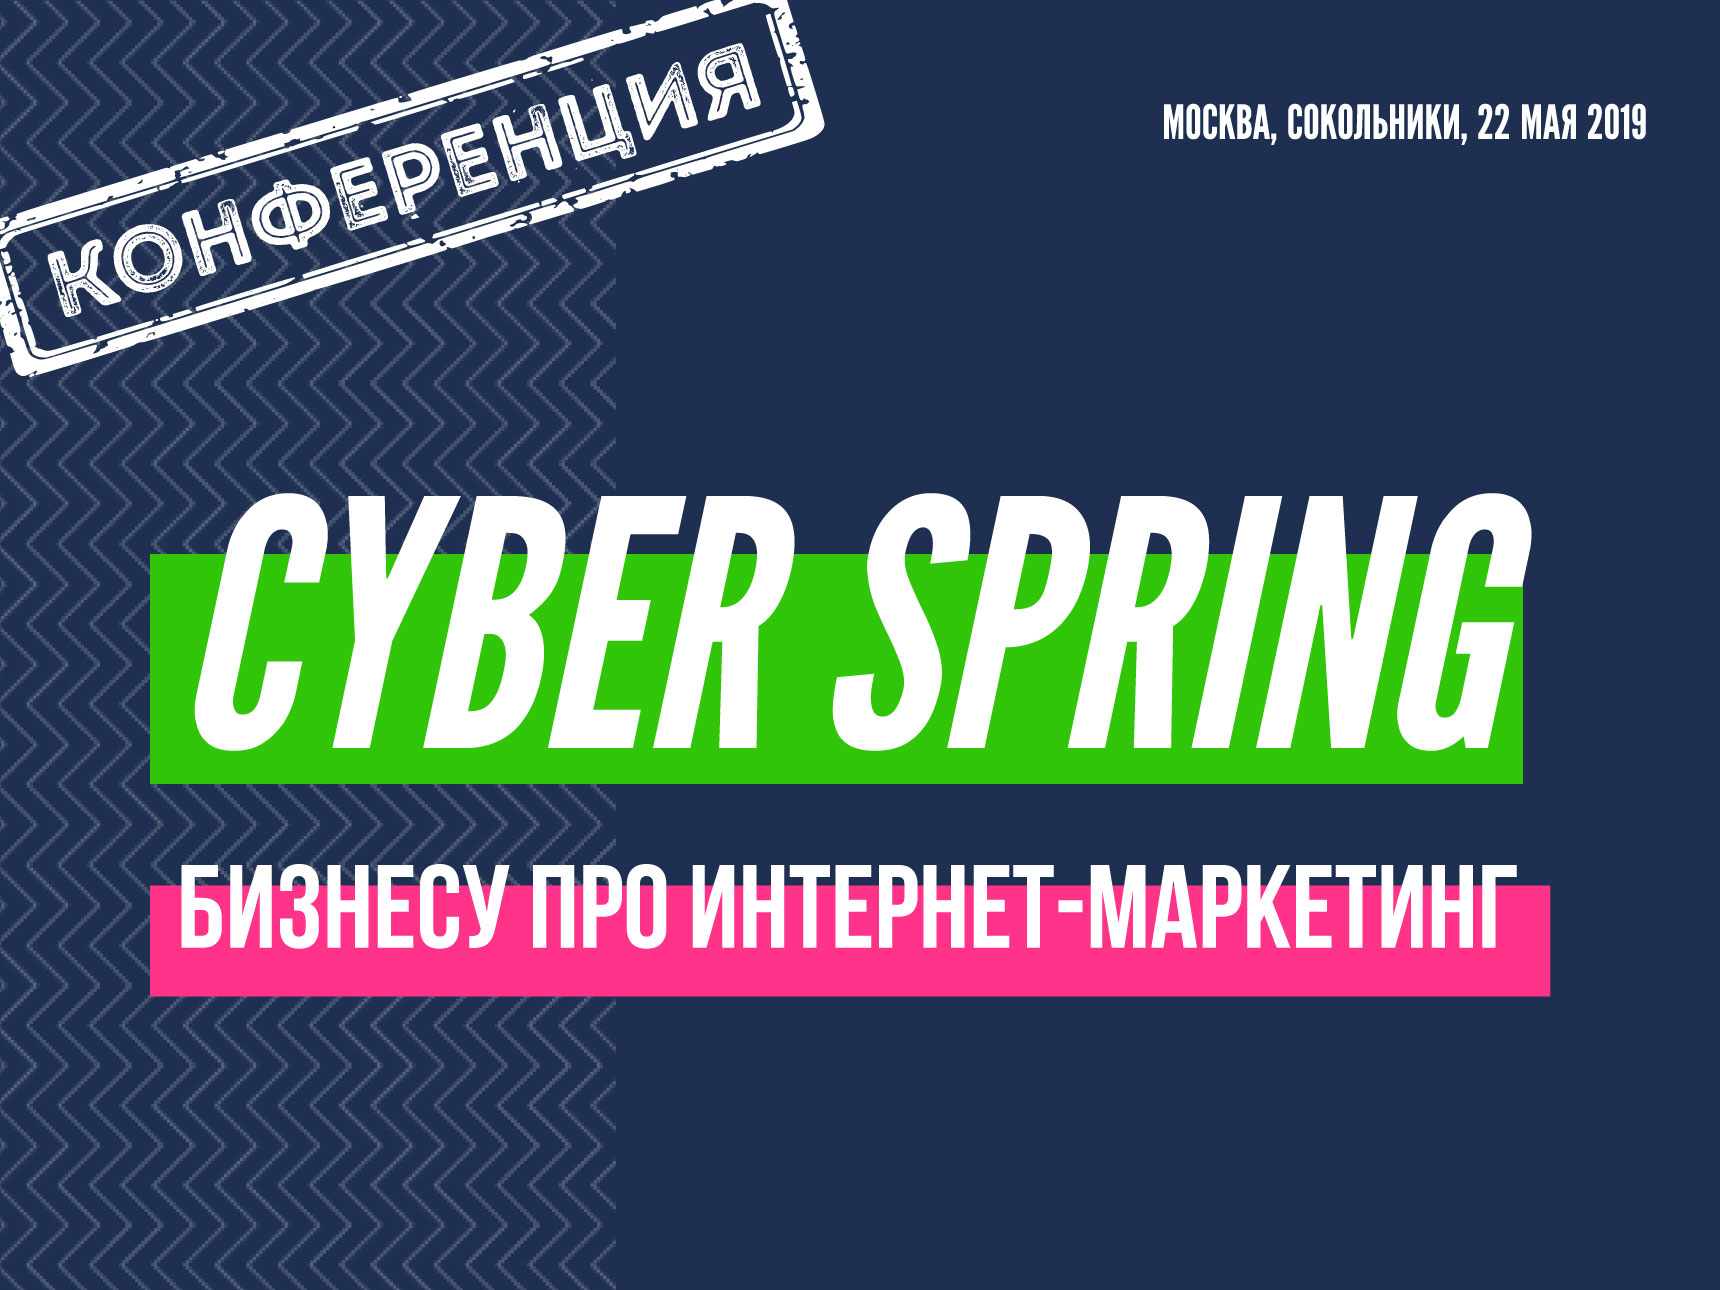 22.05.19г. Конференция CyberSpring 2019 на ECOM EXPO 2019. Для тех, кому нужны клиенты из интернета